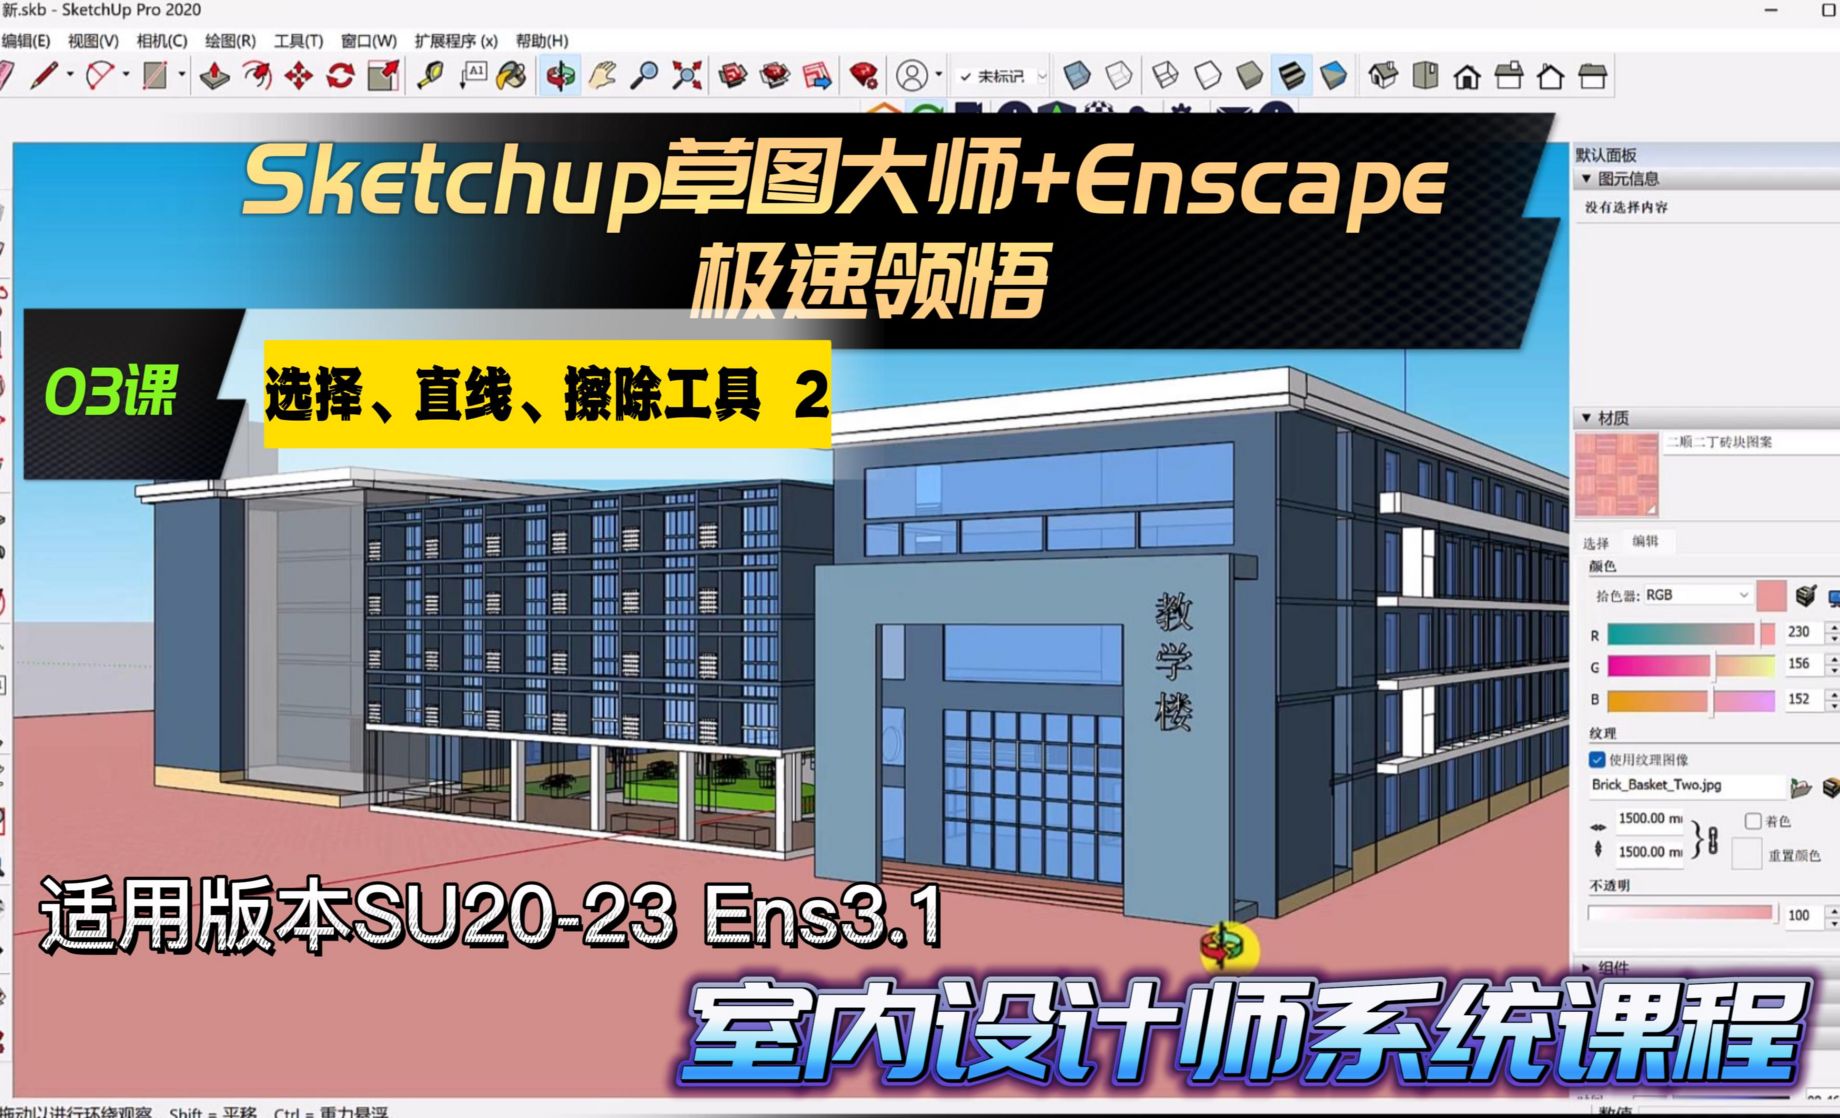 Sketchup+Enscape室内设计极速领悟-选择/直线/擦除工具2